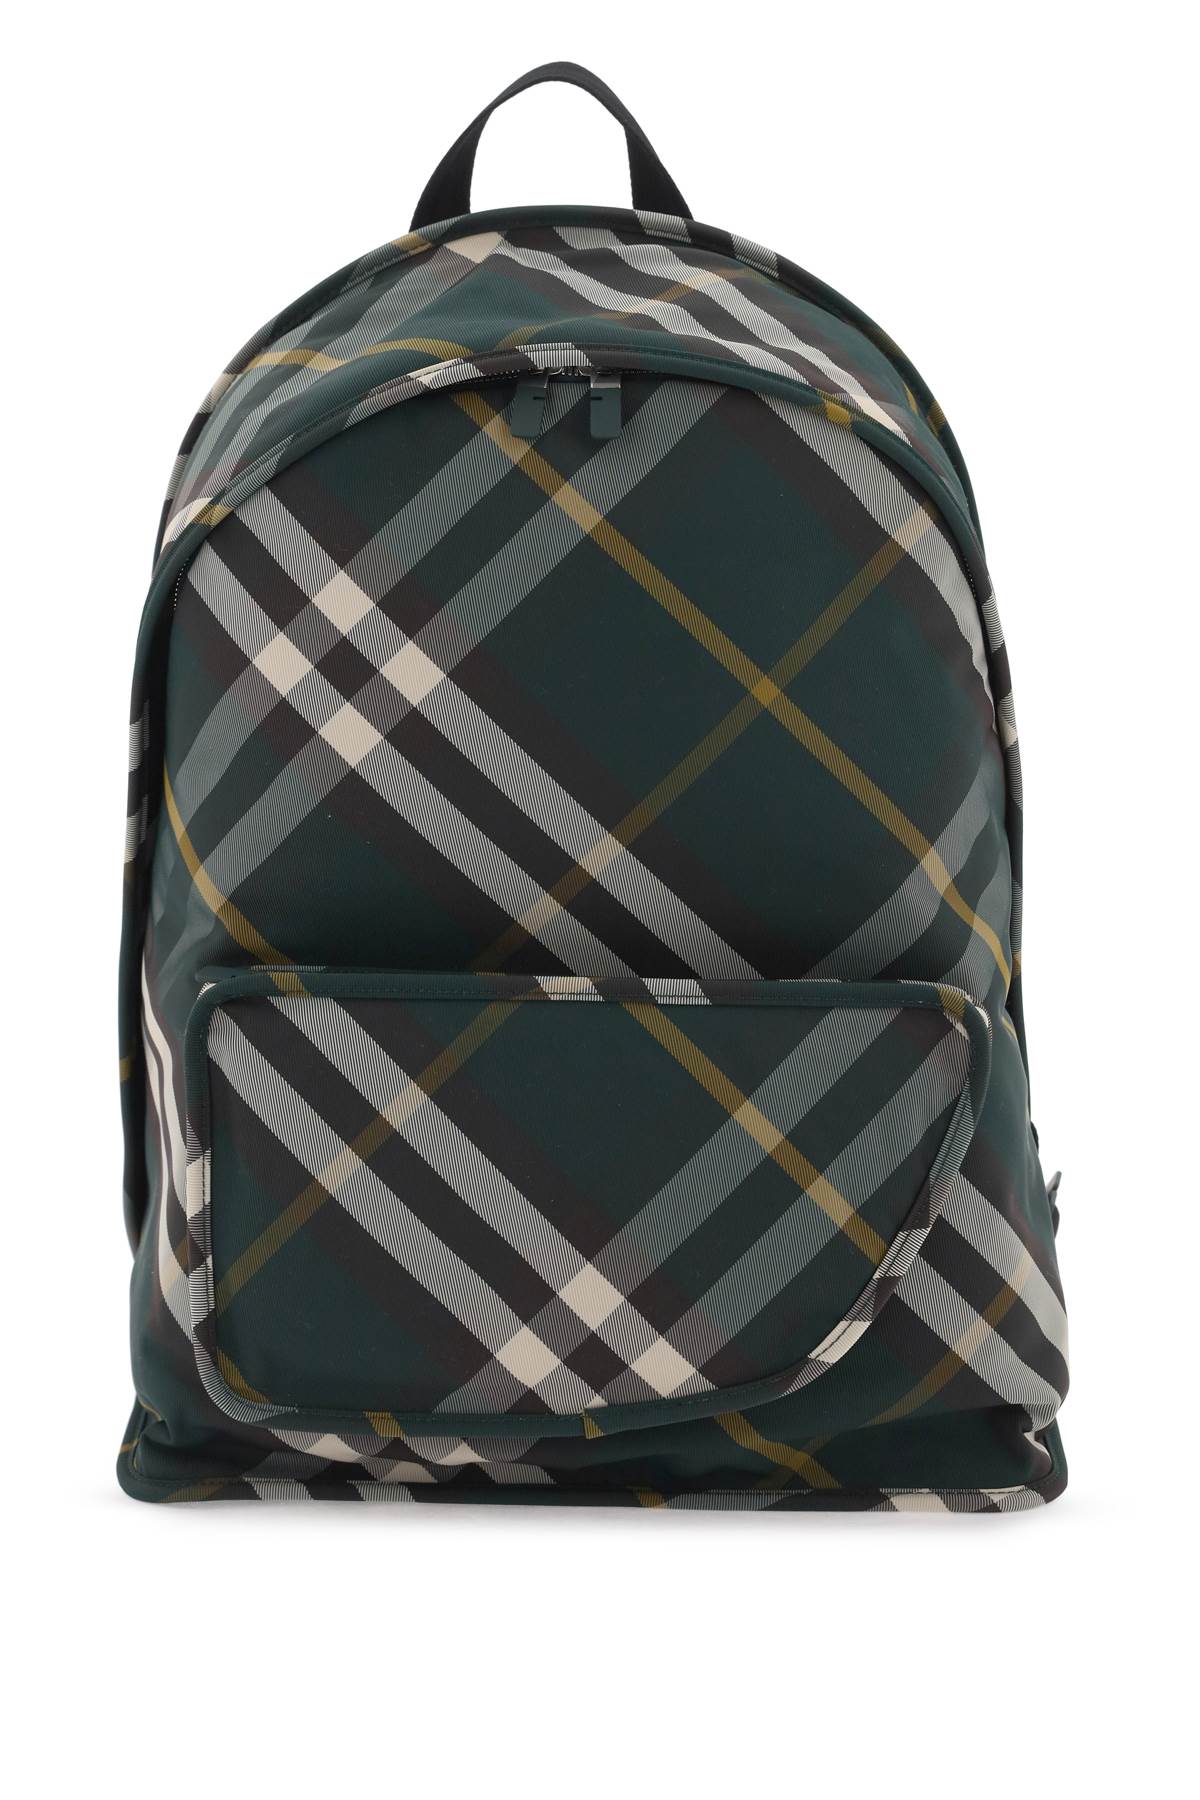 BURBERRY Multicolor Nova Check Nylon Backpack for Men